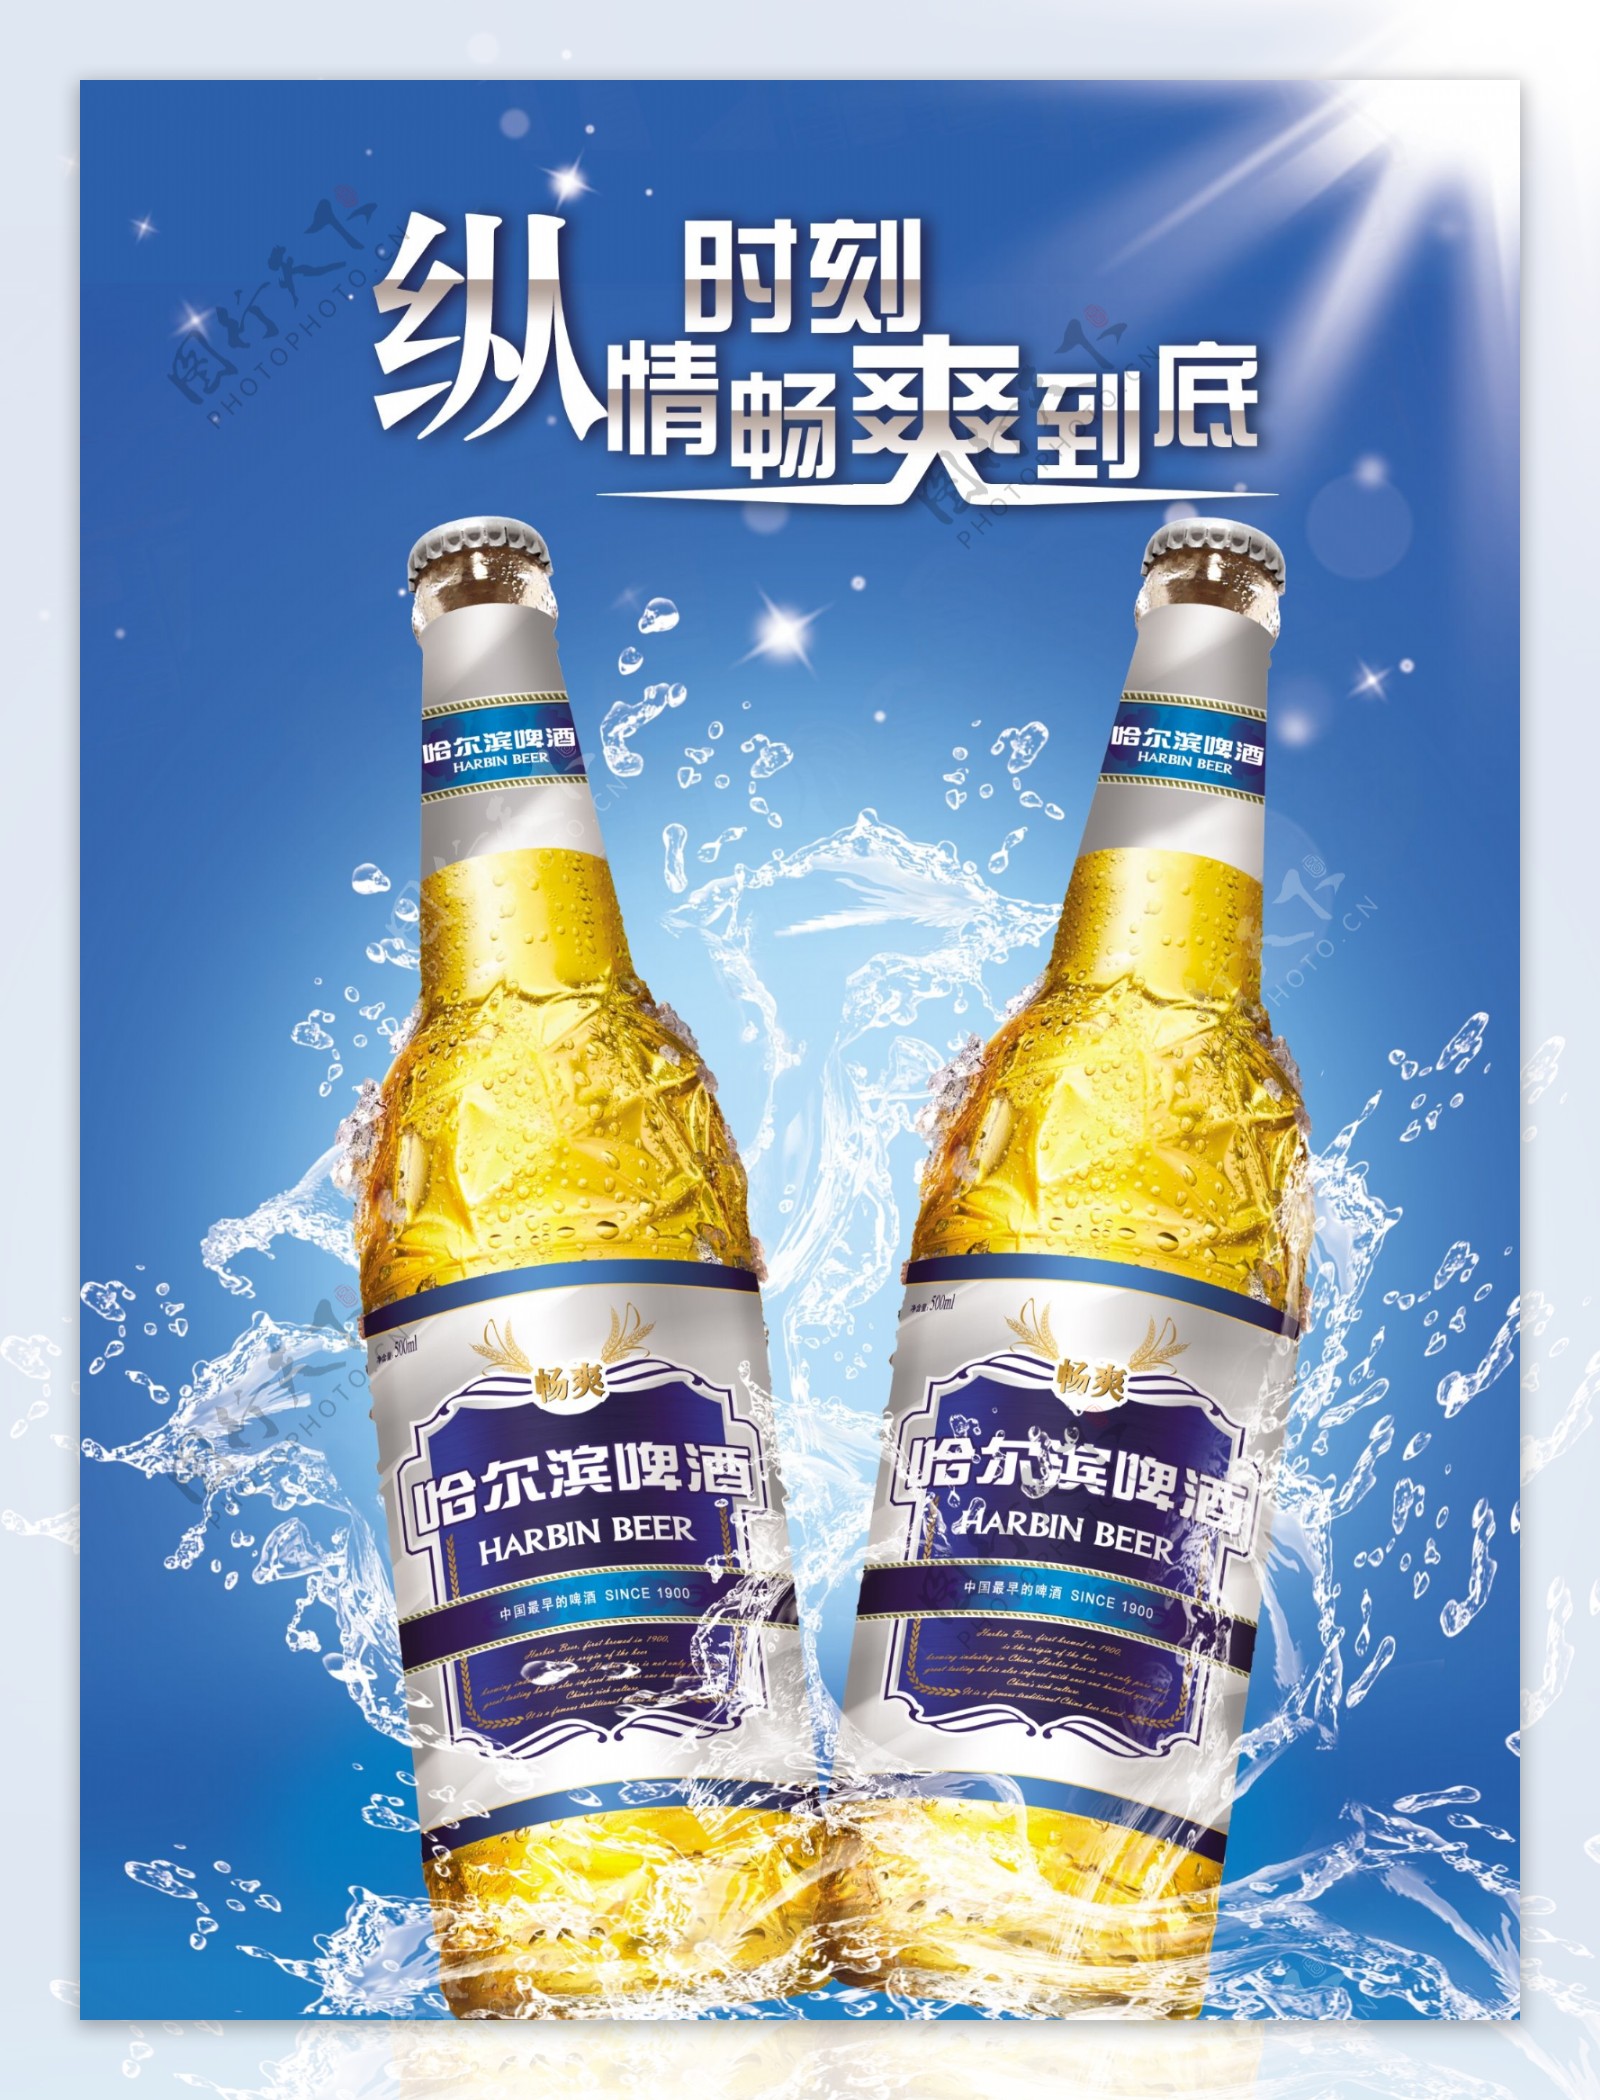 哈尔滨啤酒广告PSD素材